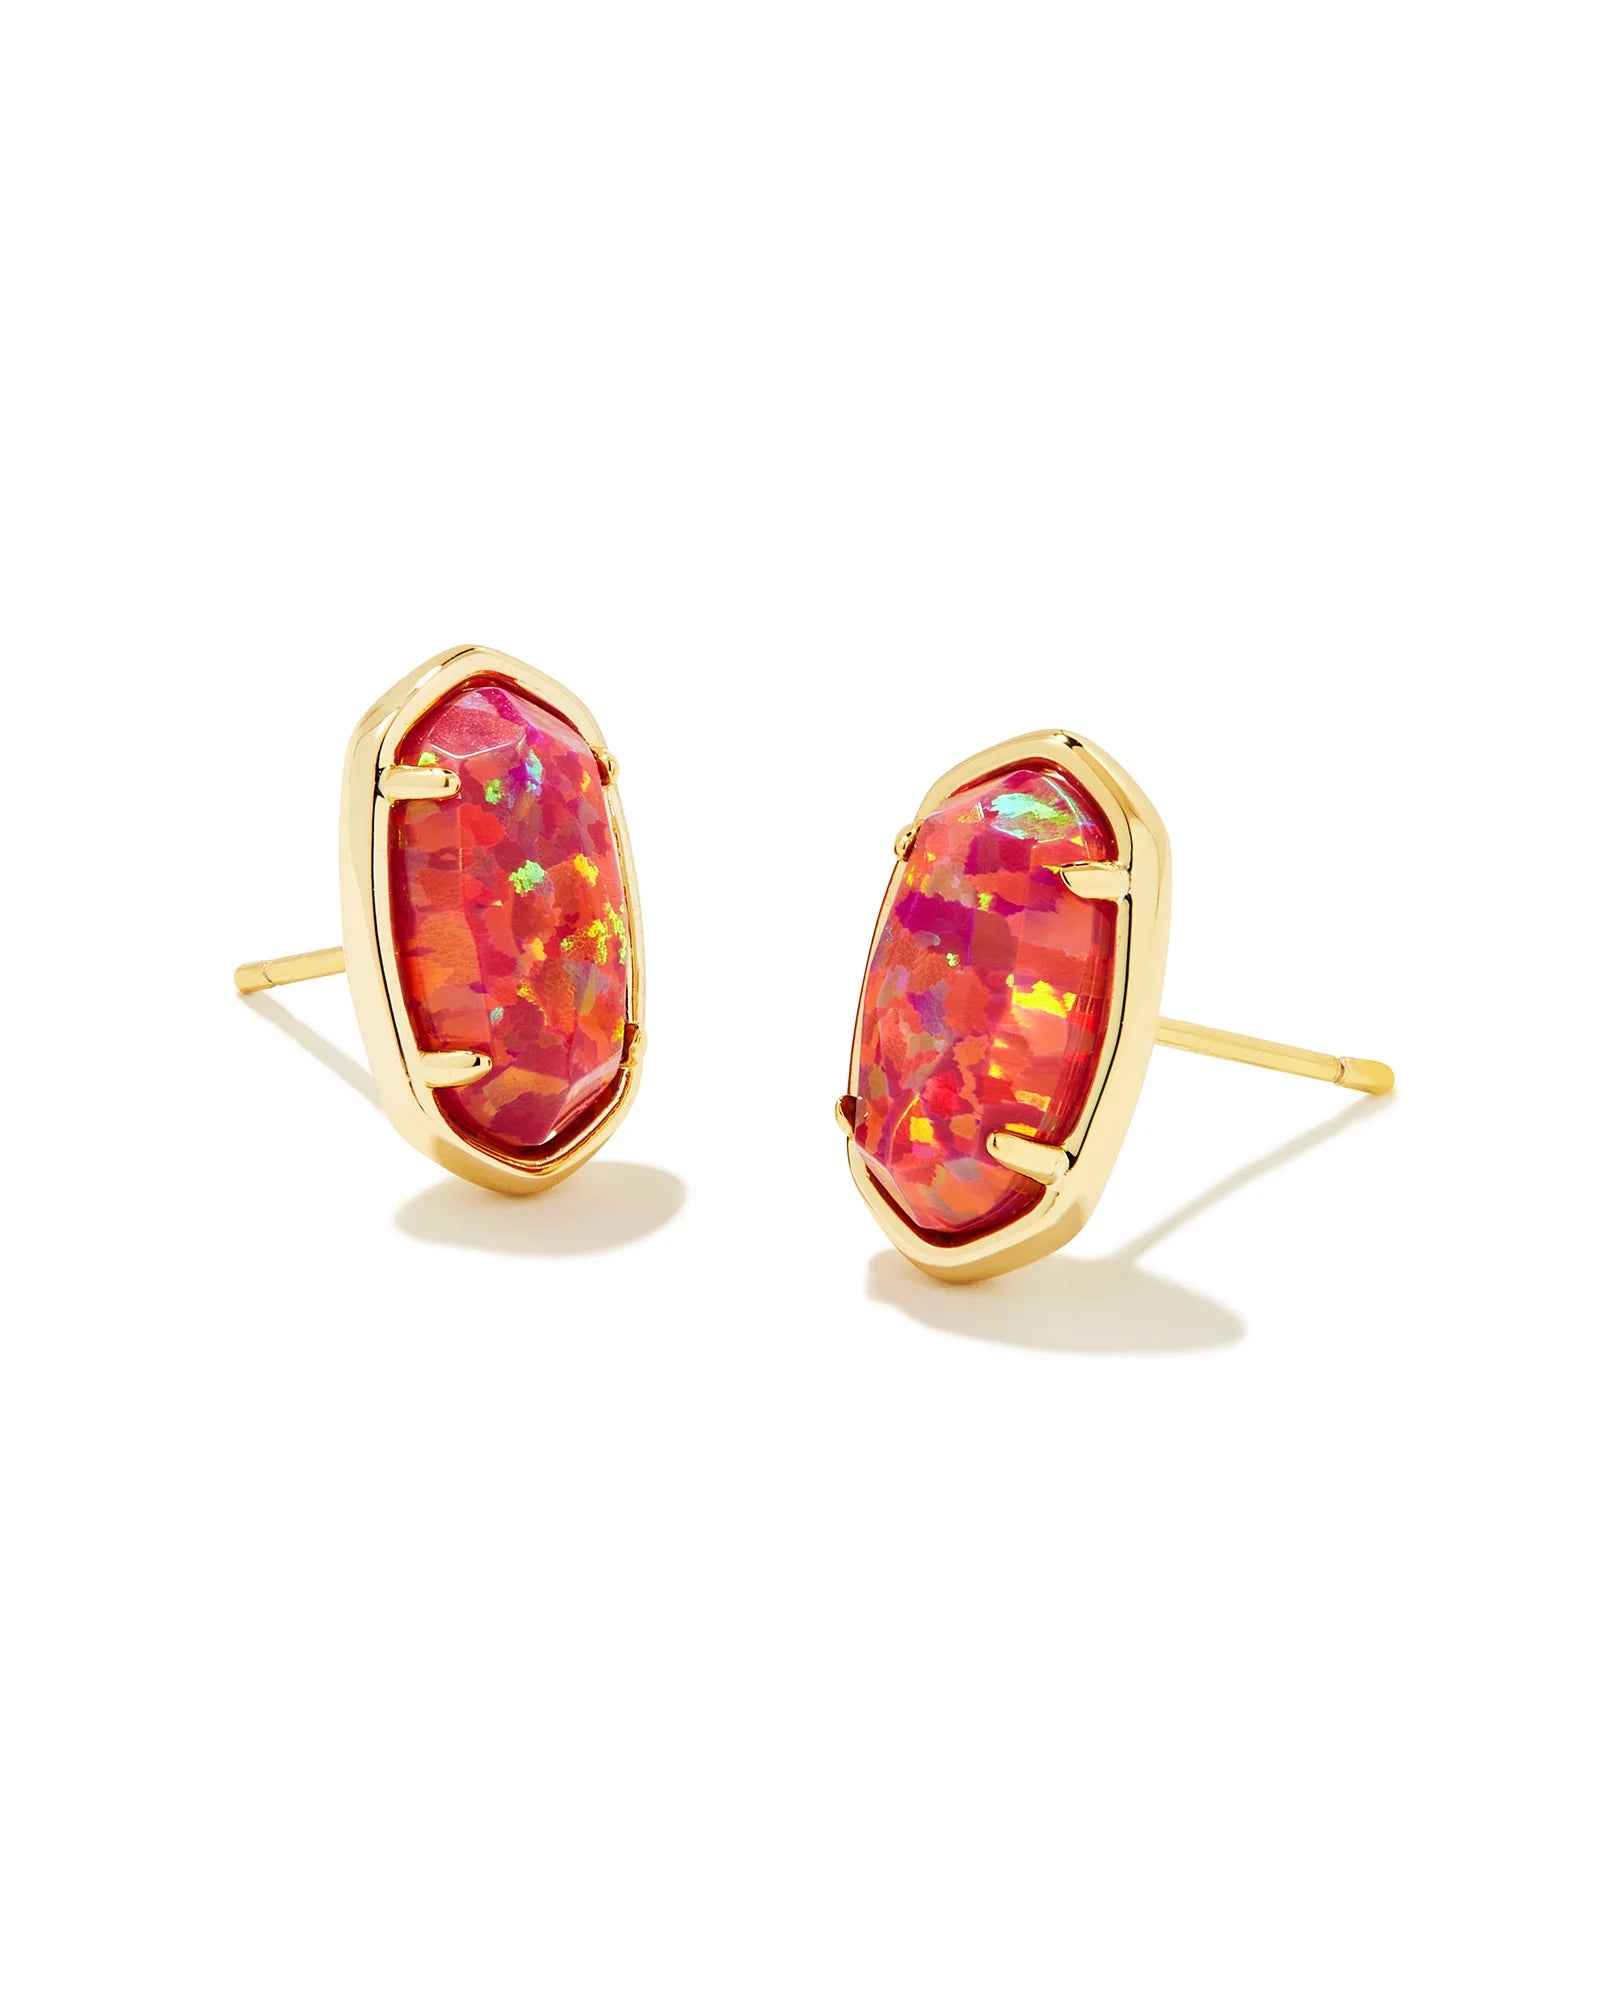 KENDRA SCOTT- Grayson Gold Stone Stud Earrings in Berry Opal